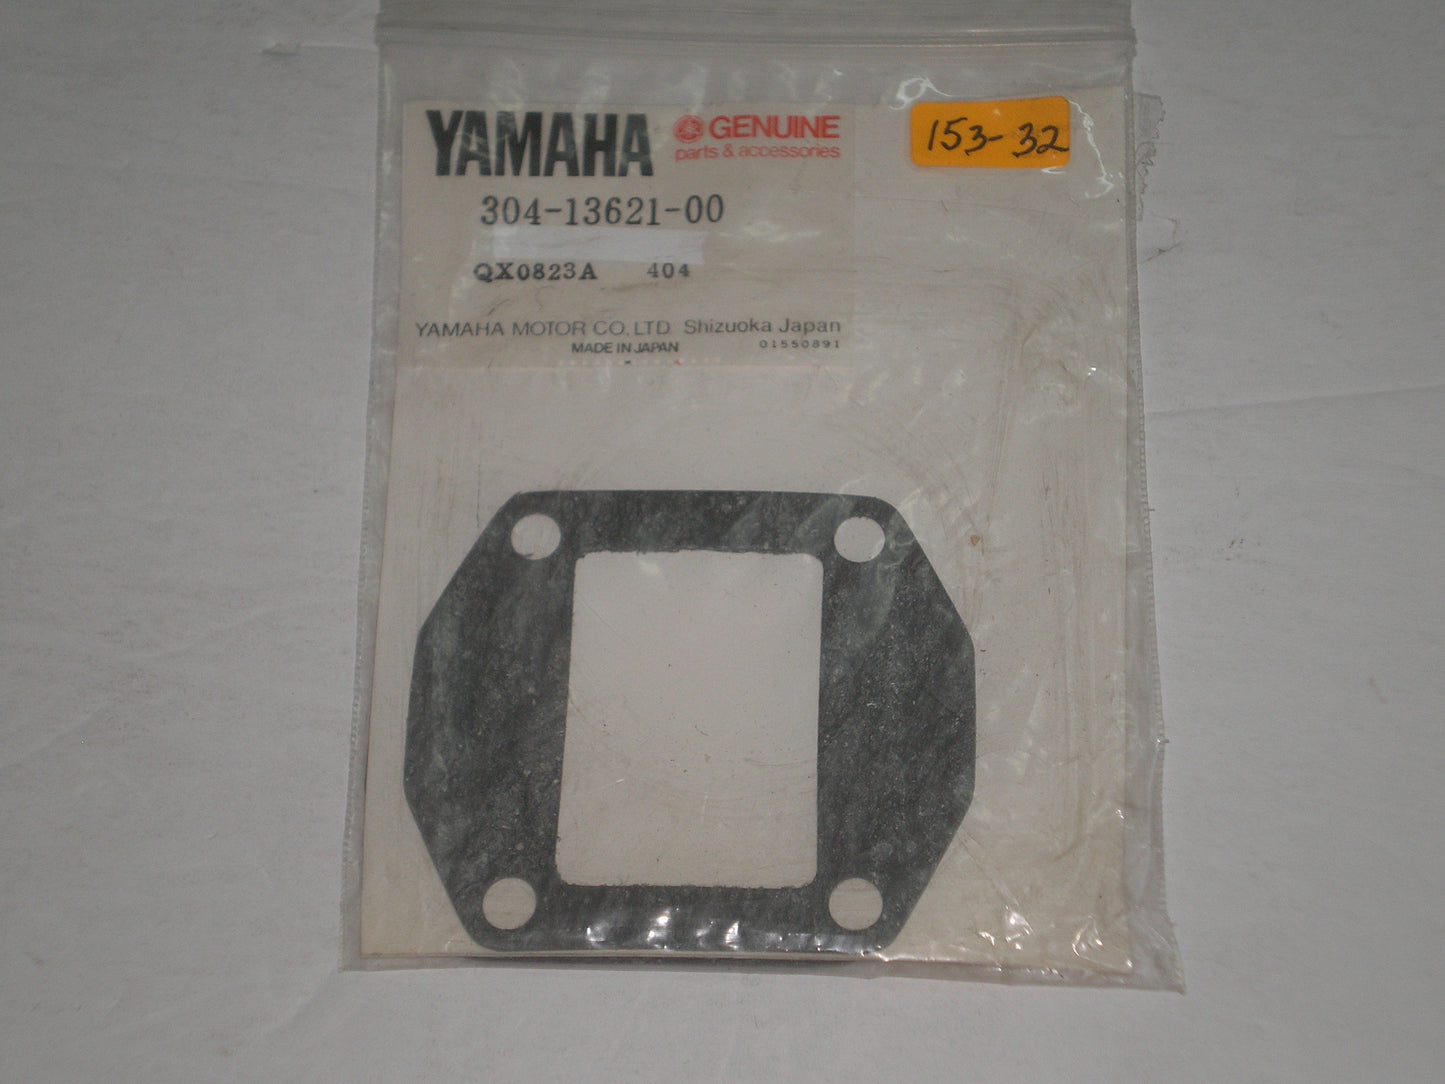 YAMAHA LT2 LT3 LTMX YZ80 Reed Valve Seat Gasket  304-13621-00 / 3VM-13621-00